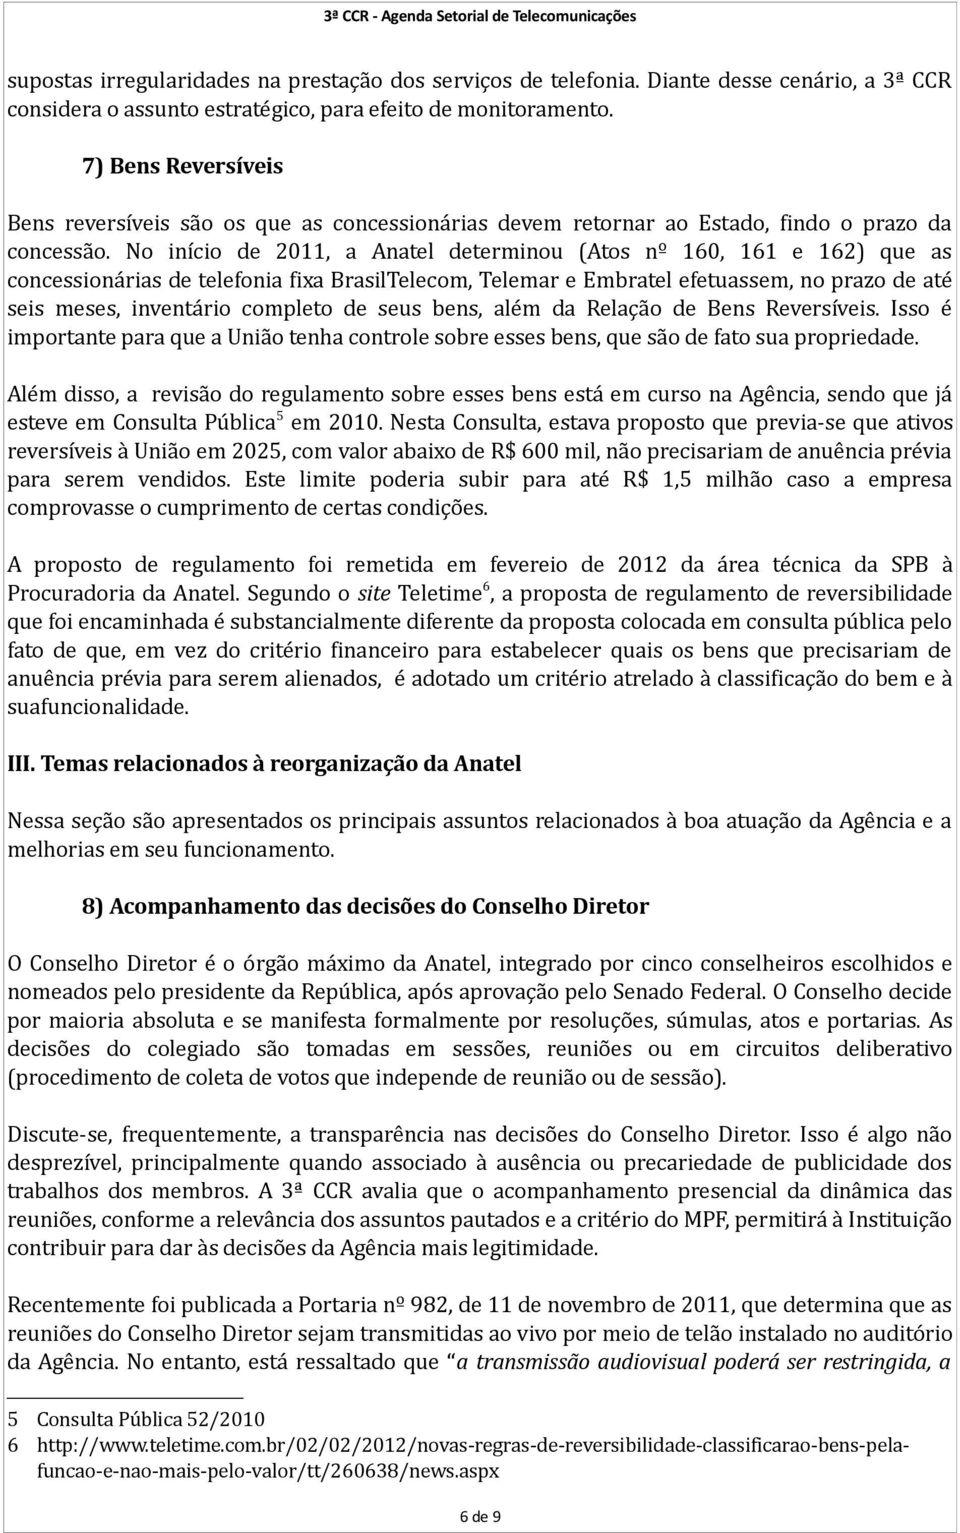 No início de 2011, a Anatel determinou (Atos nº 160, 161 e 162) que as concessionárias de telefonia fixa BrasilTelecom, Telemar e Embratel efetuassem, no prazo de até seis meses, inventário completo